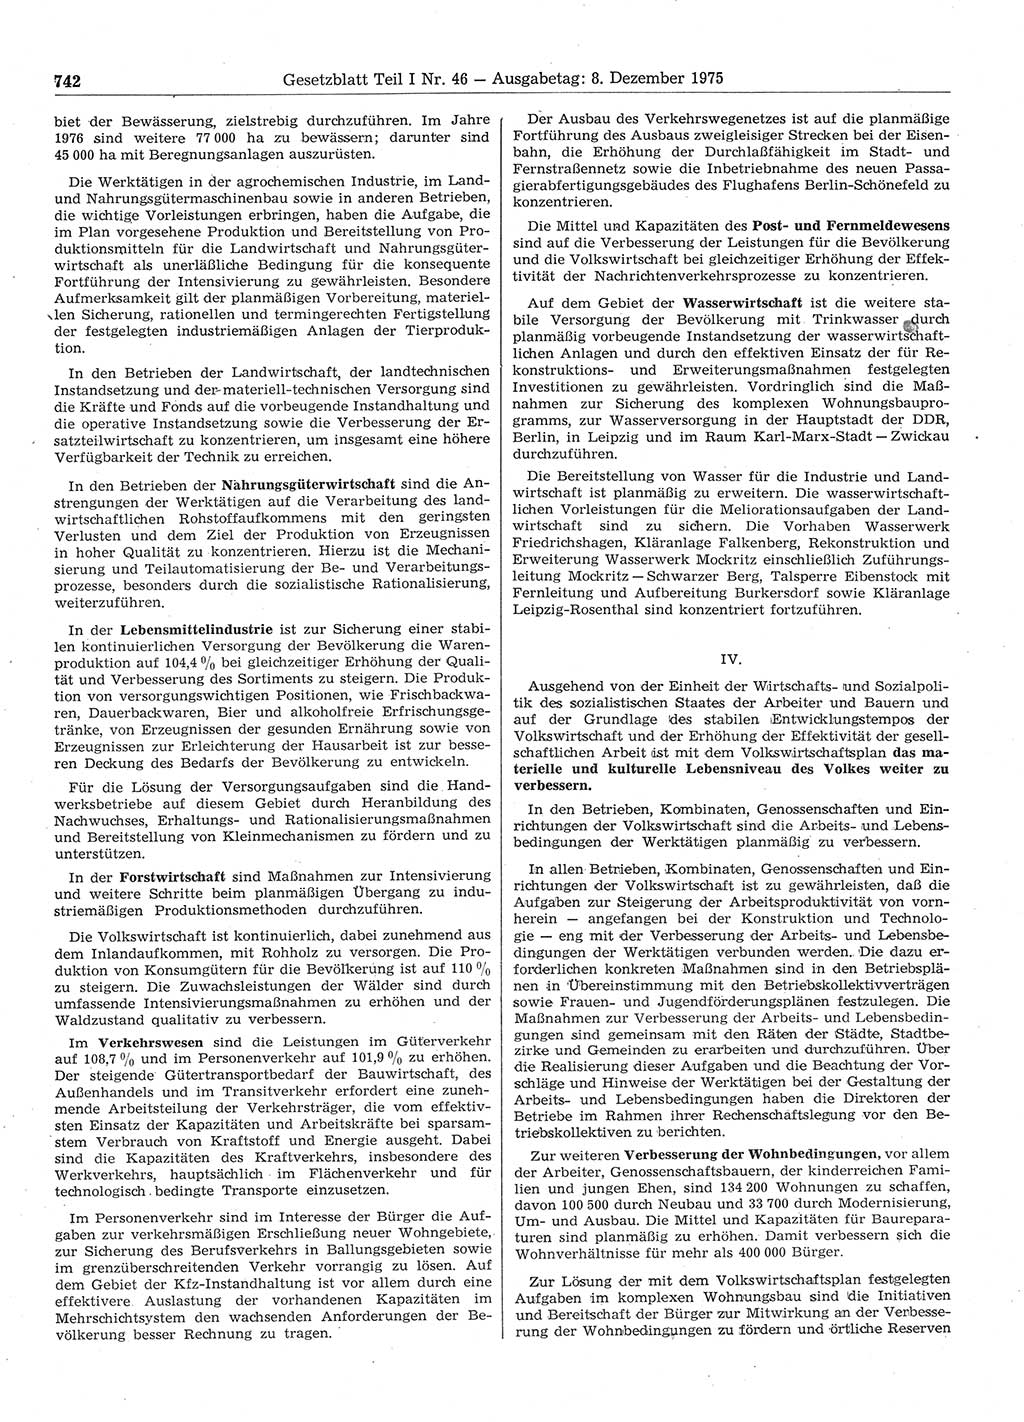 Gesetzblatt (GBl.) der Deutschen Demokratischen Republik (DDR) Teil Ⅰ 1975, Seite 742 (GBl. DDR Ⅰ 1975, S. 742)